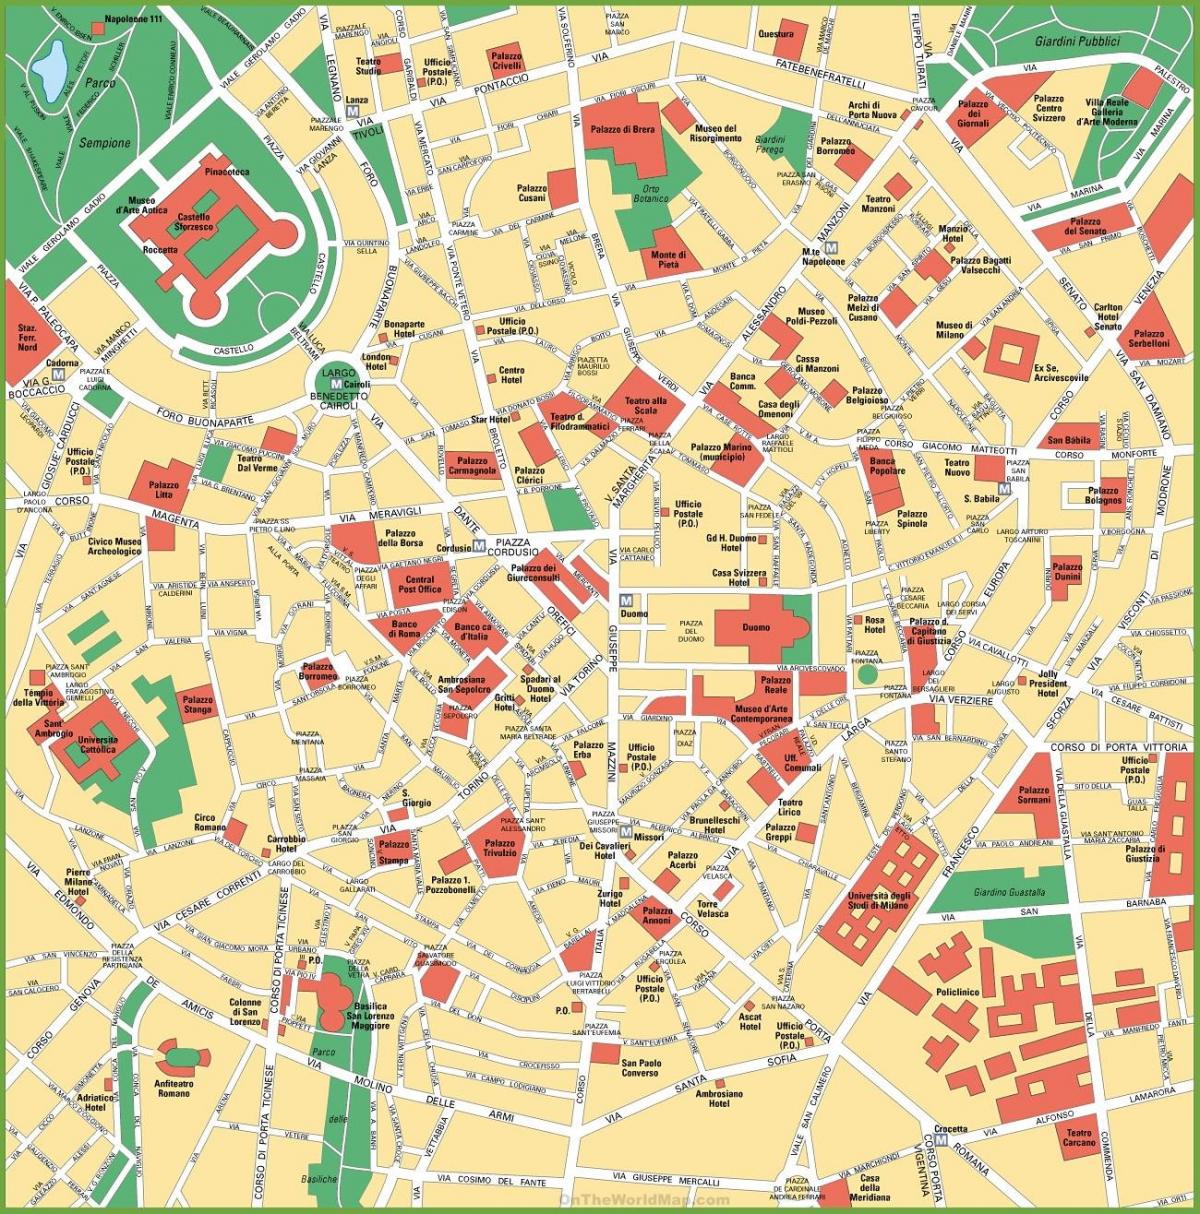 Mappa del centro di Milano